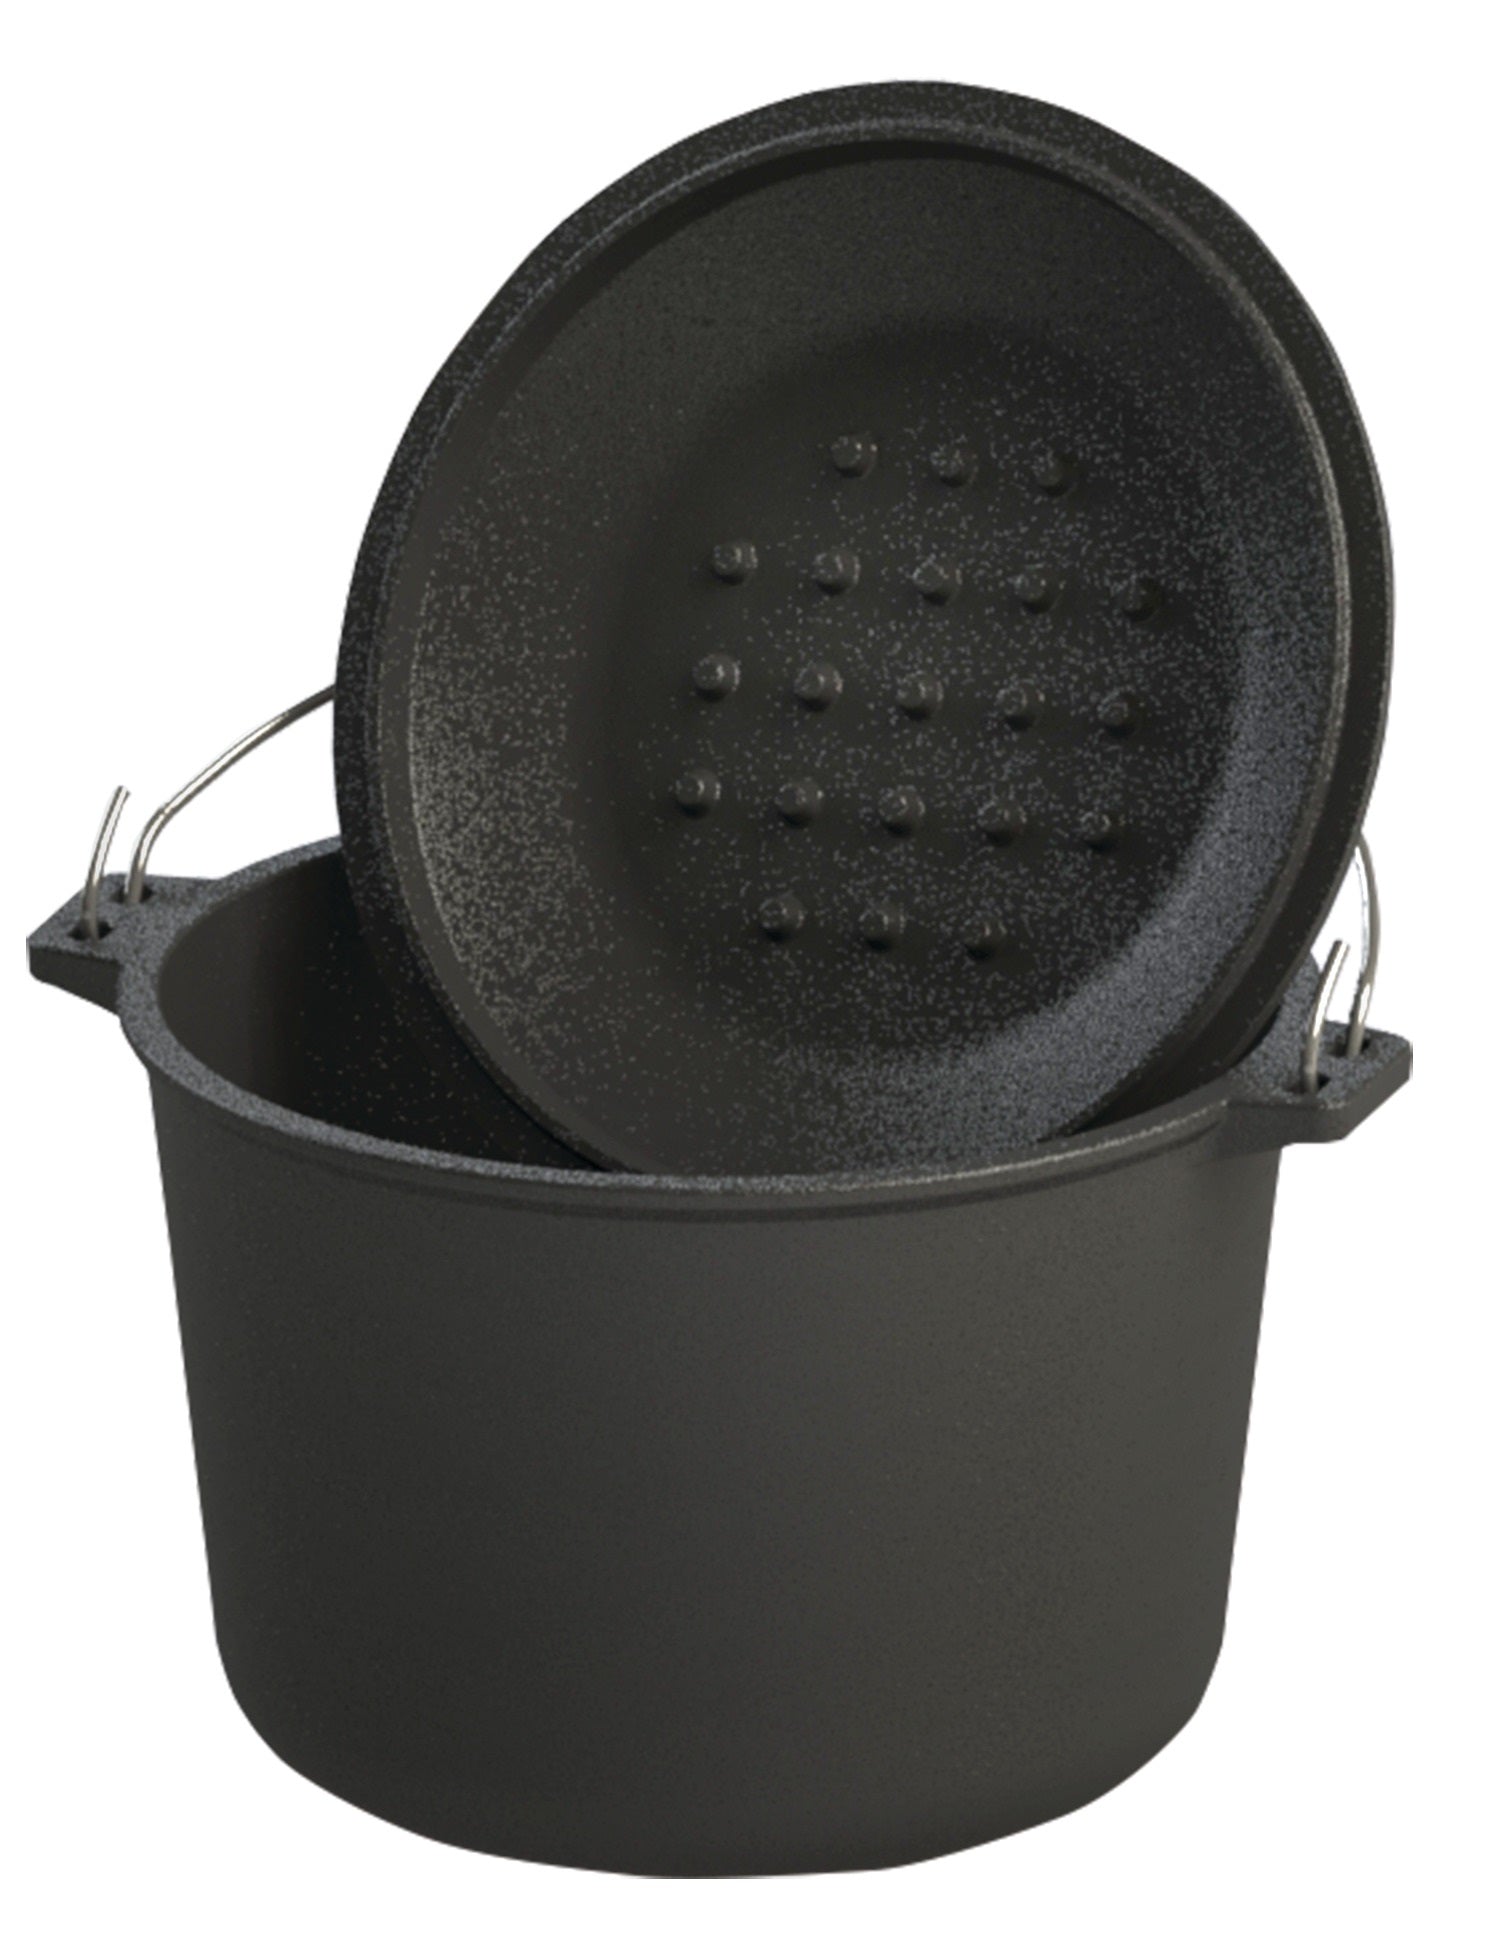 6-qt Covered Soup Pot, Cast Iron Cookware